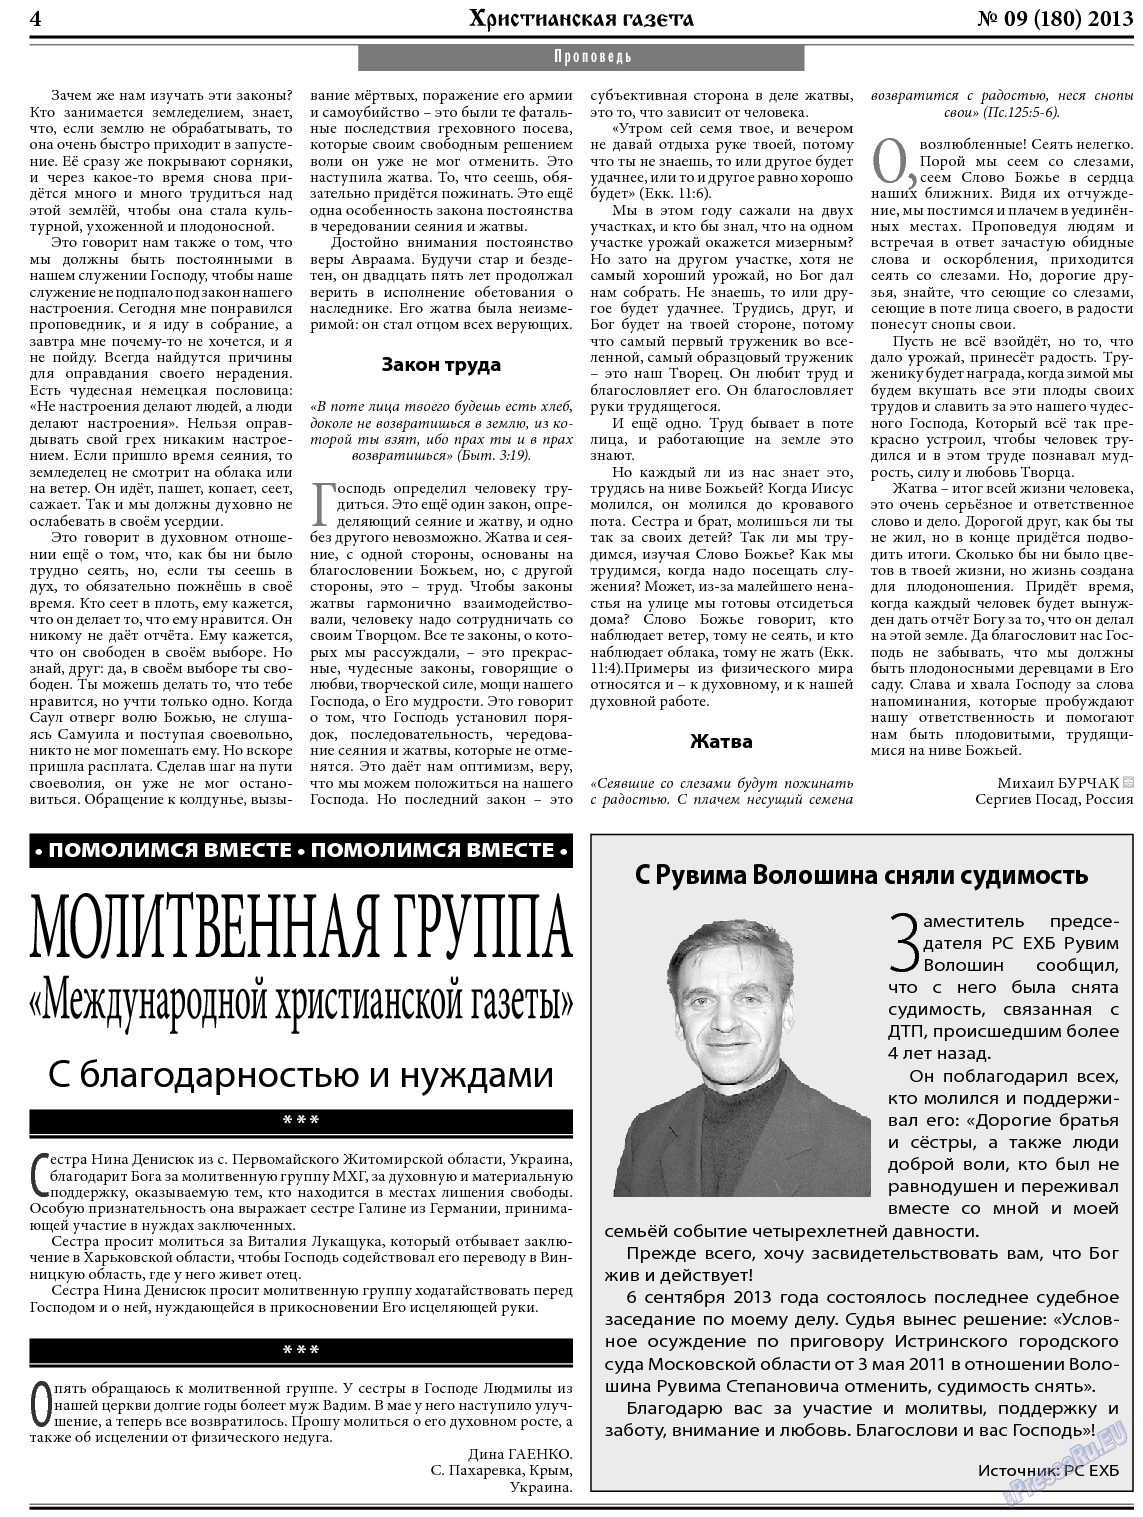 Христианская газета, газета. 2013 №9 стр.4